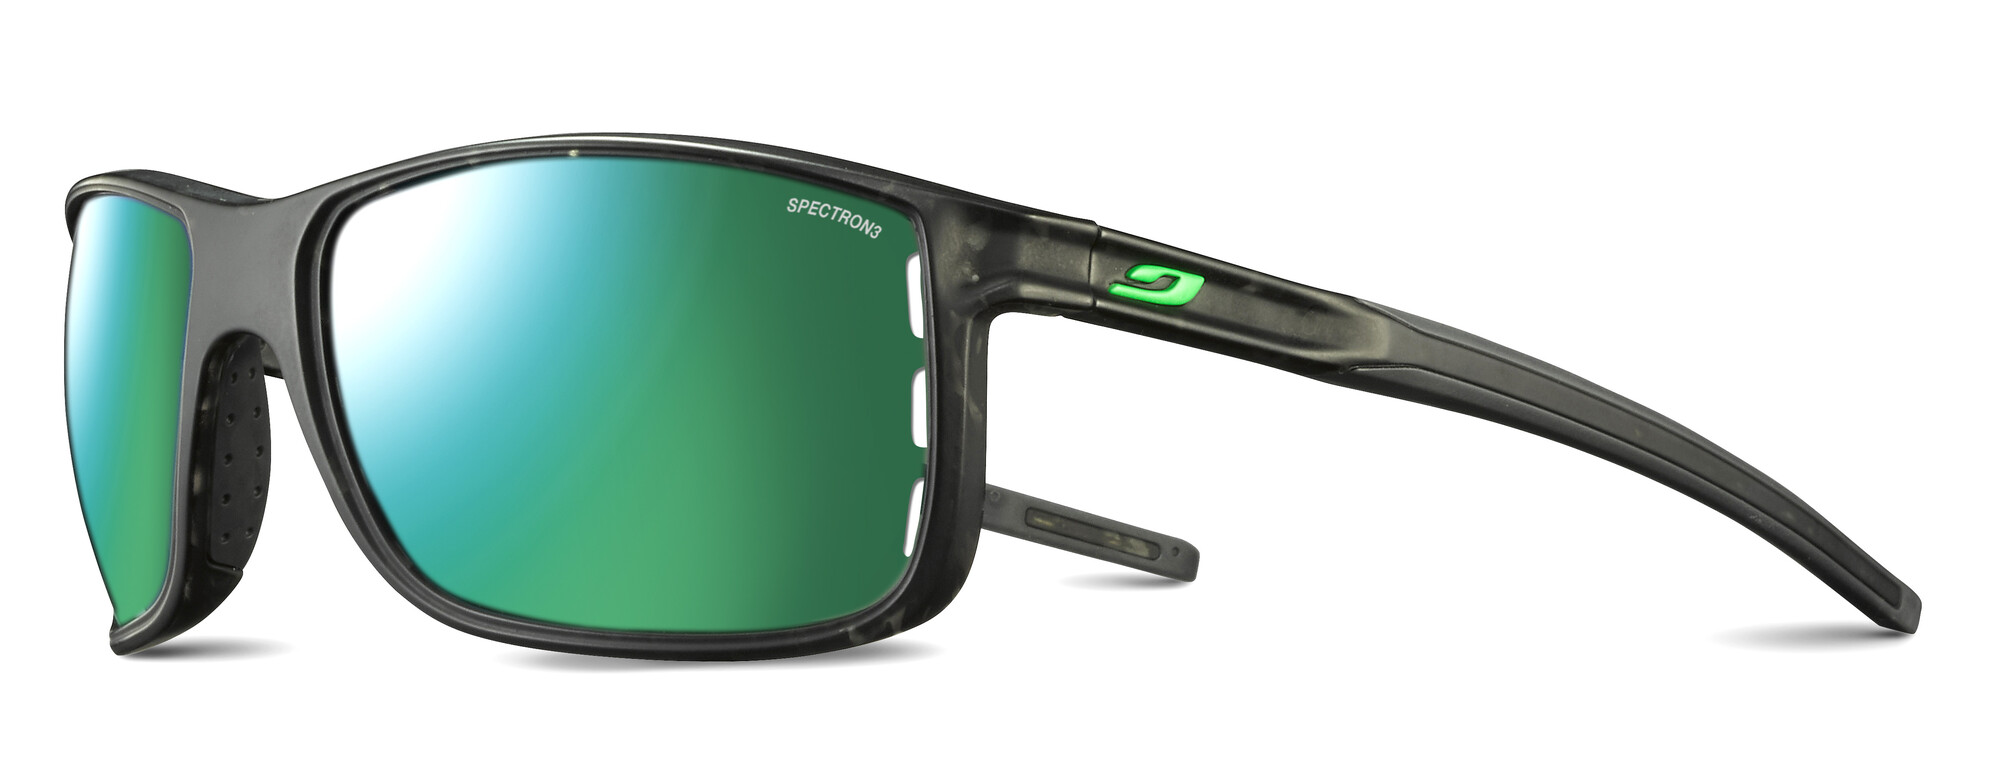 Julbo - UV sunglasses for men - Arise - Spectron 3 - Grey/Green